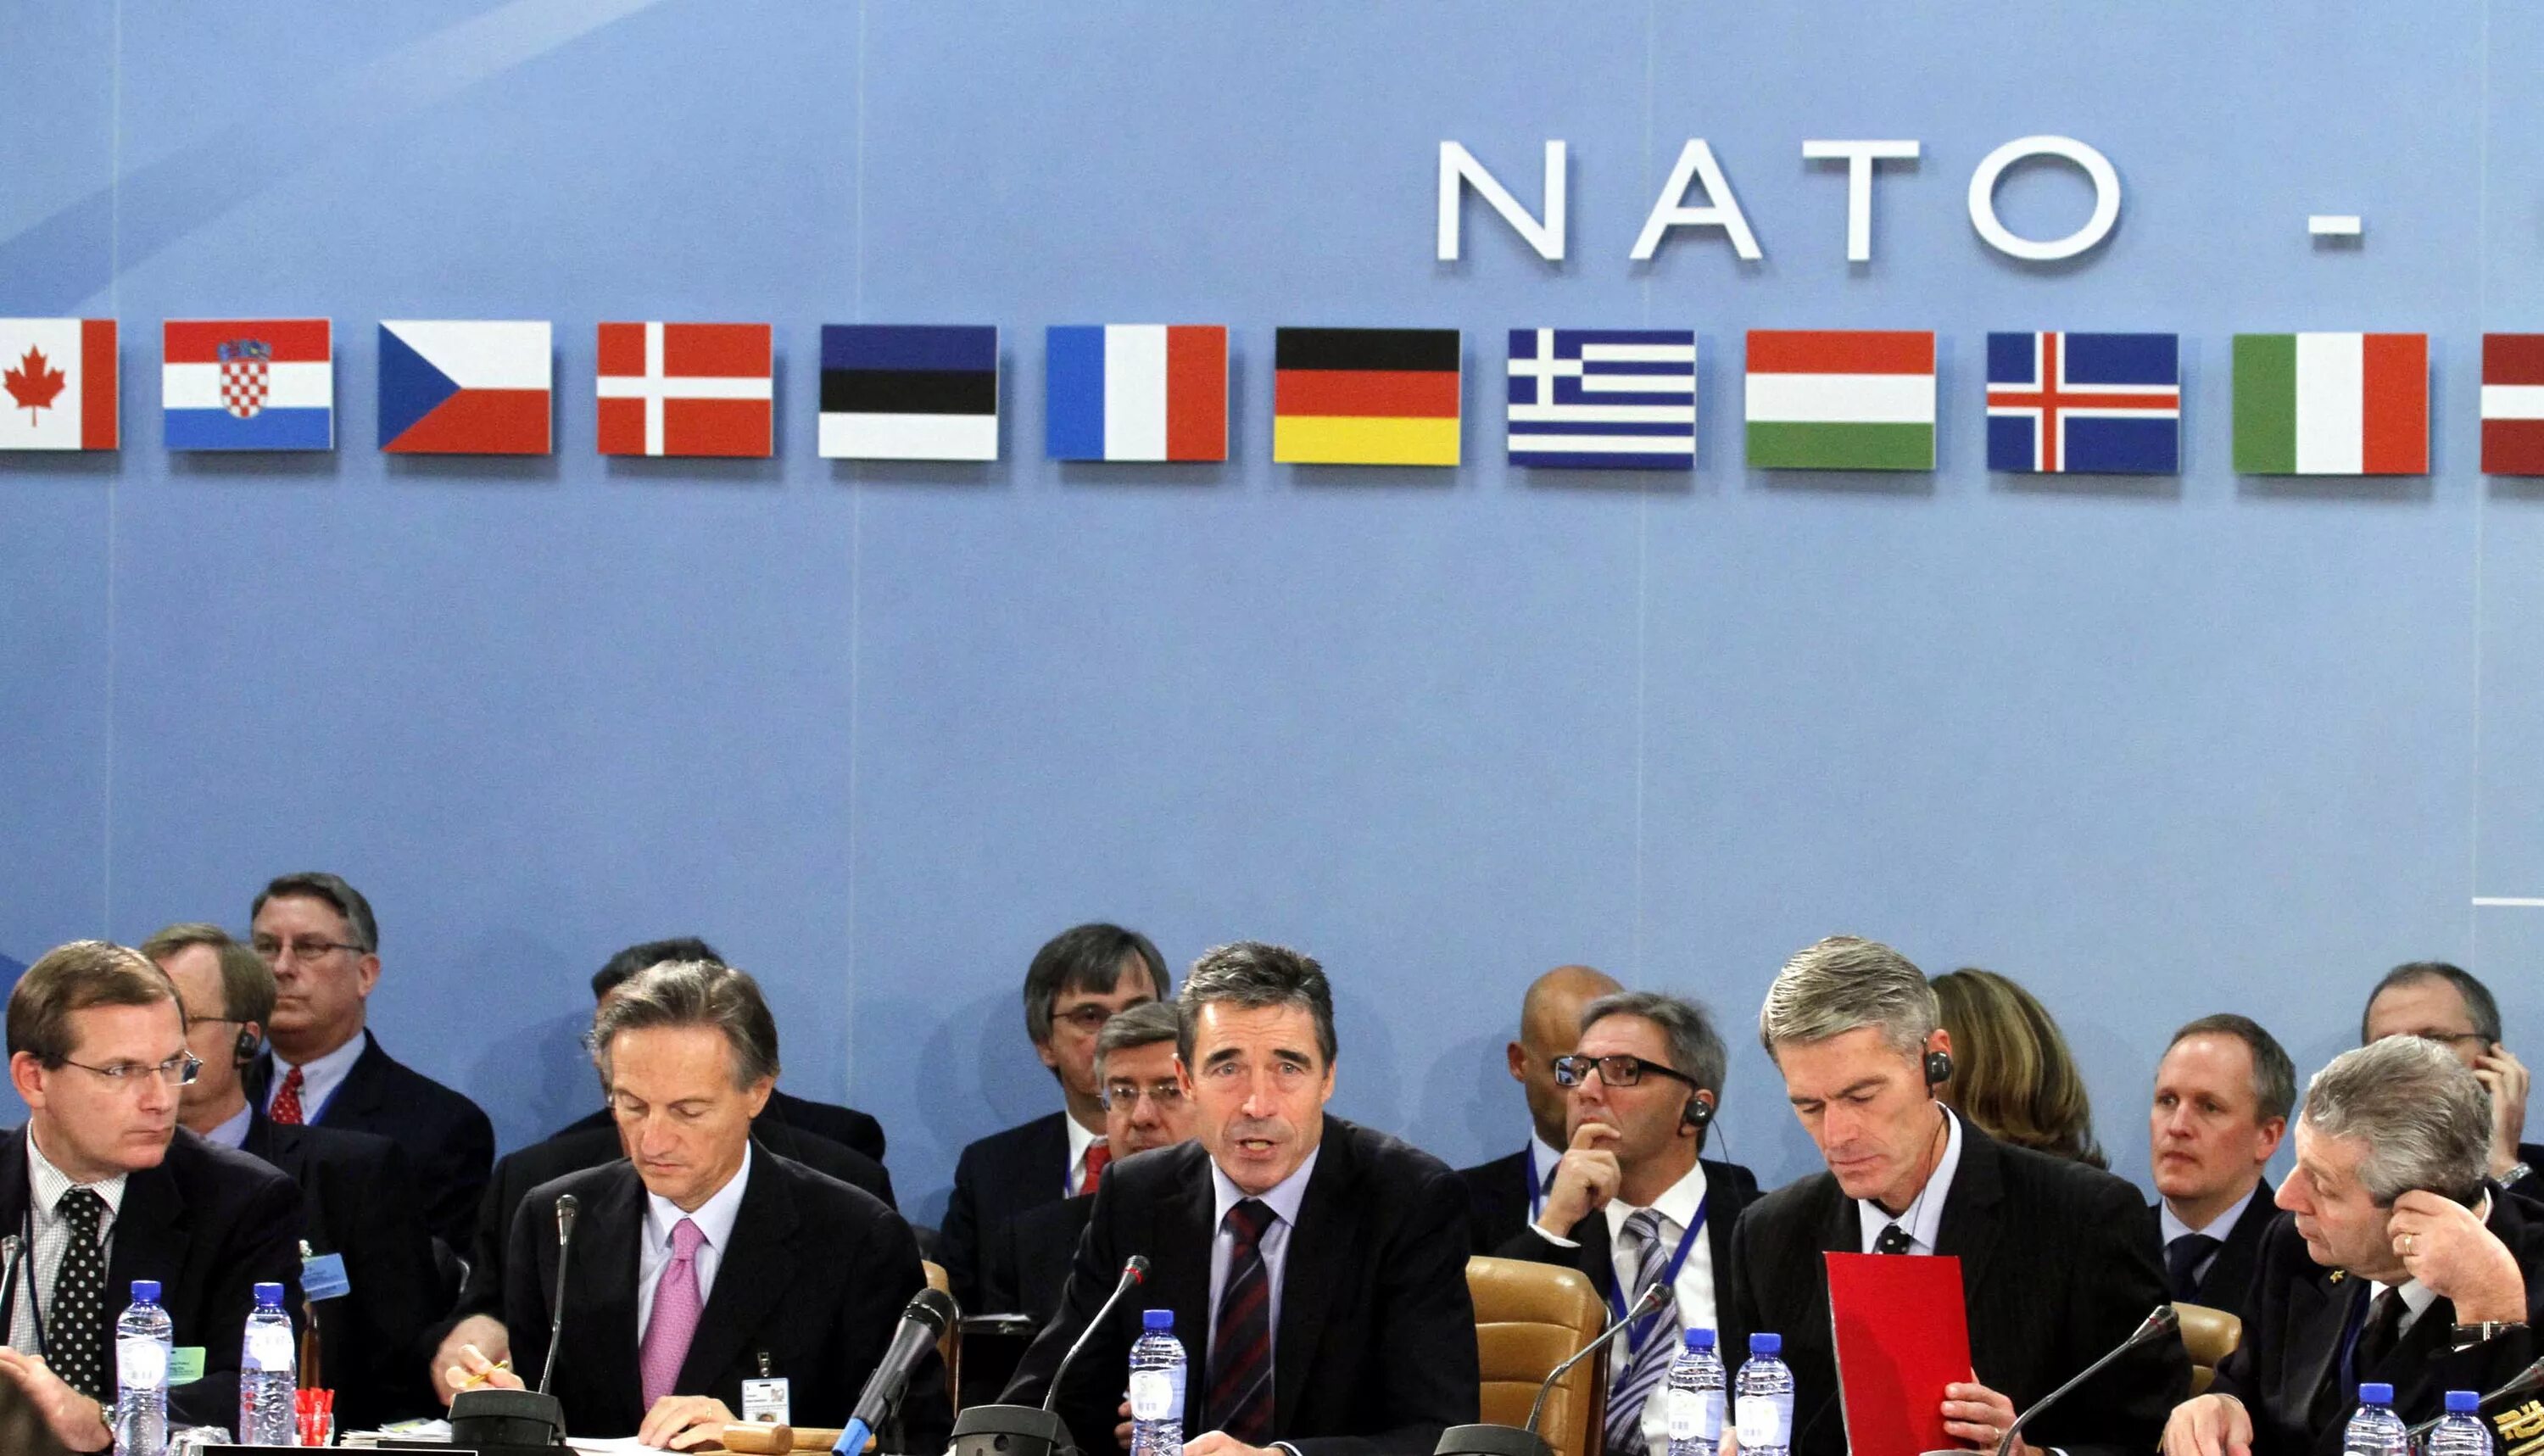 Нато 32. Саммит НАТО. Претенденты в НАТО.